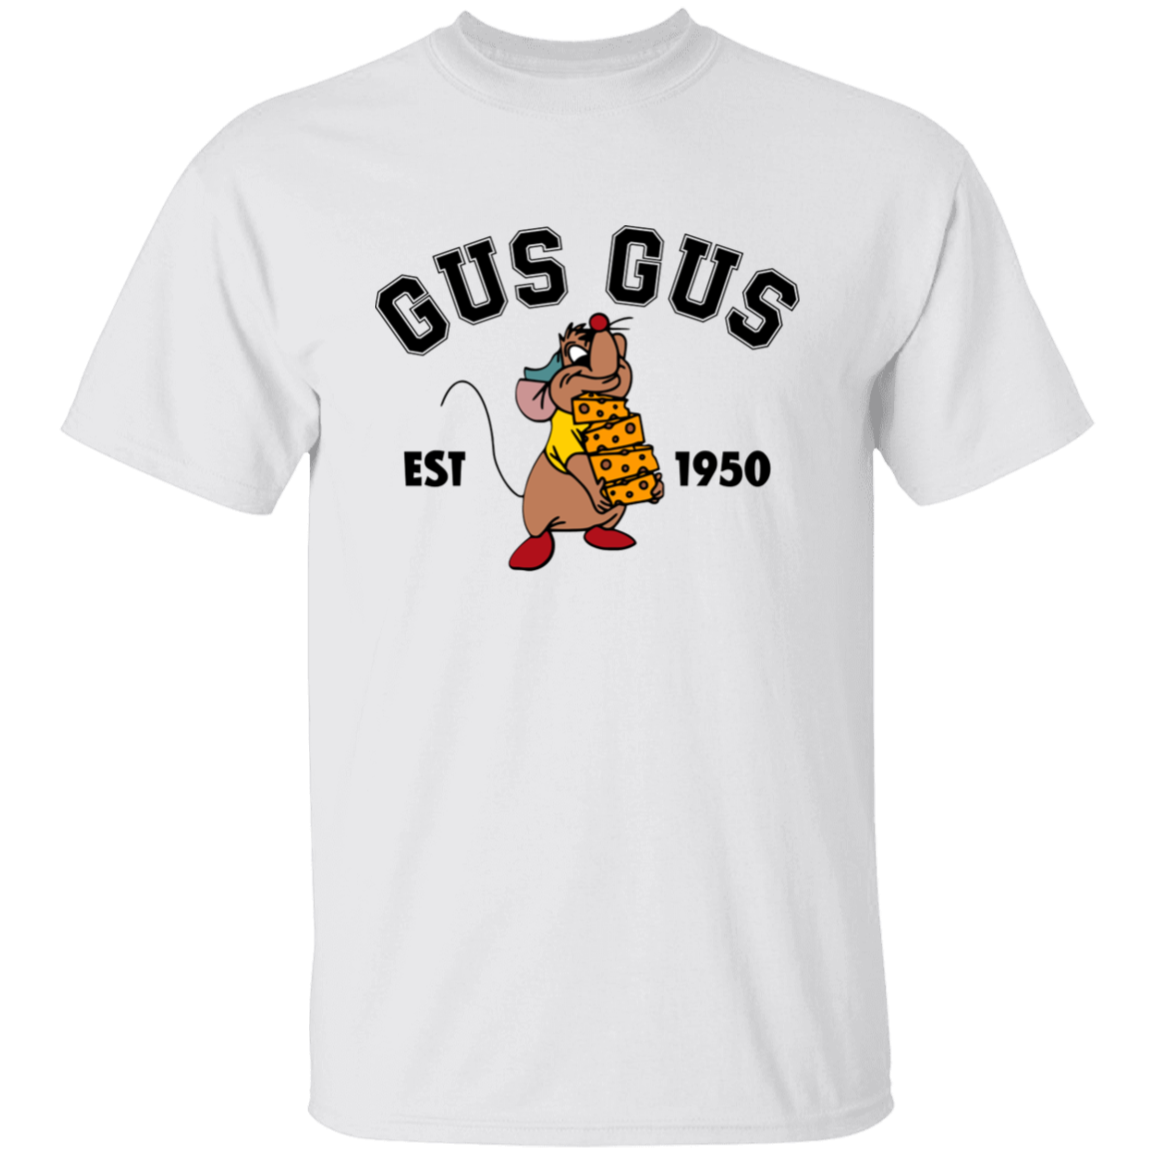 Gus Gus 5.3 oz. T-Shirt